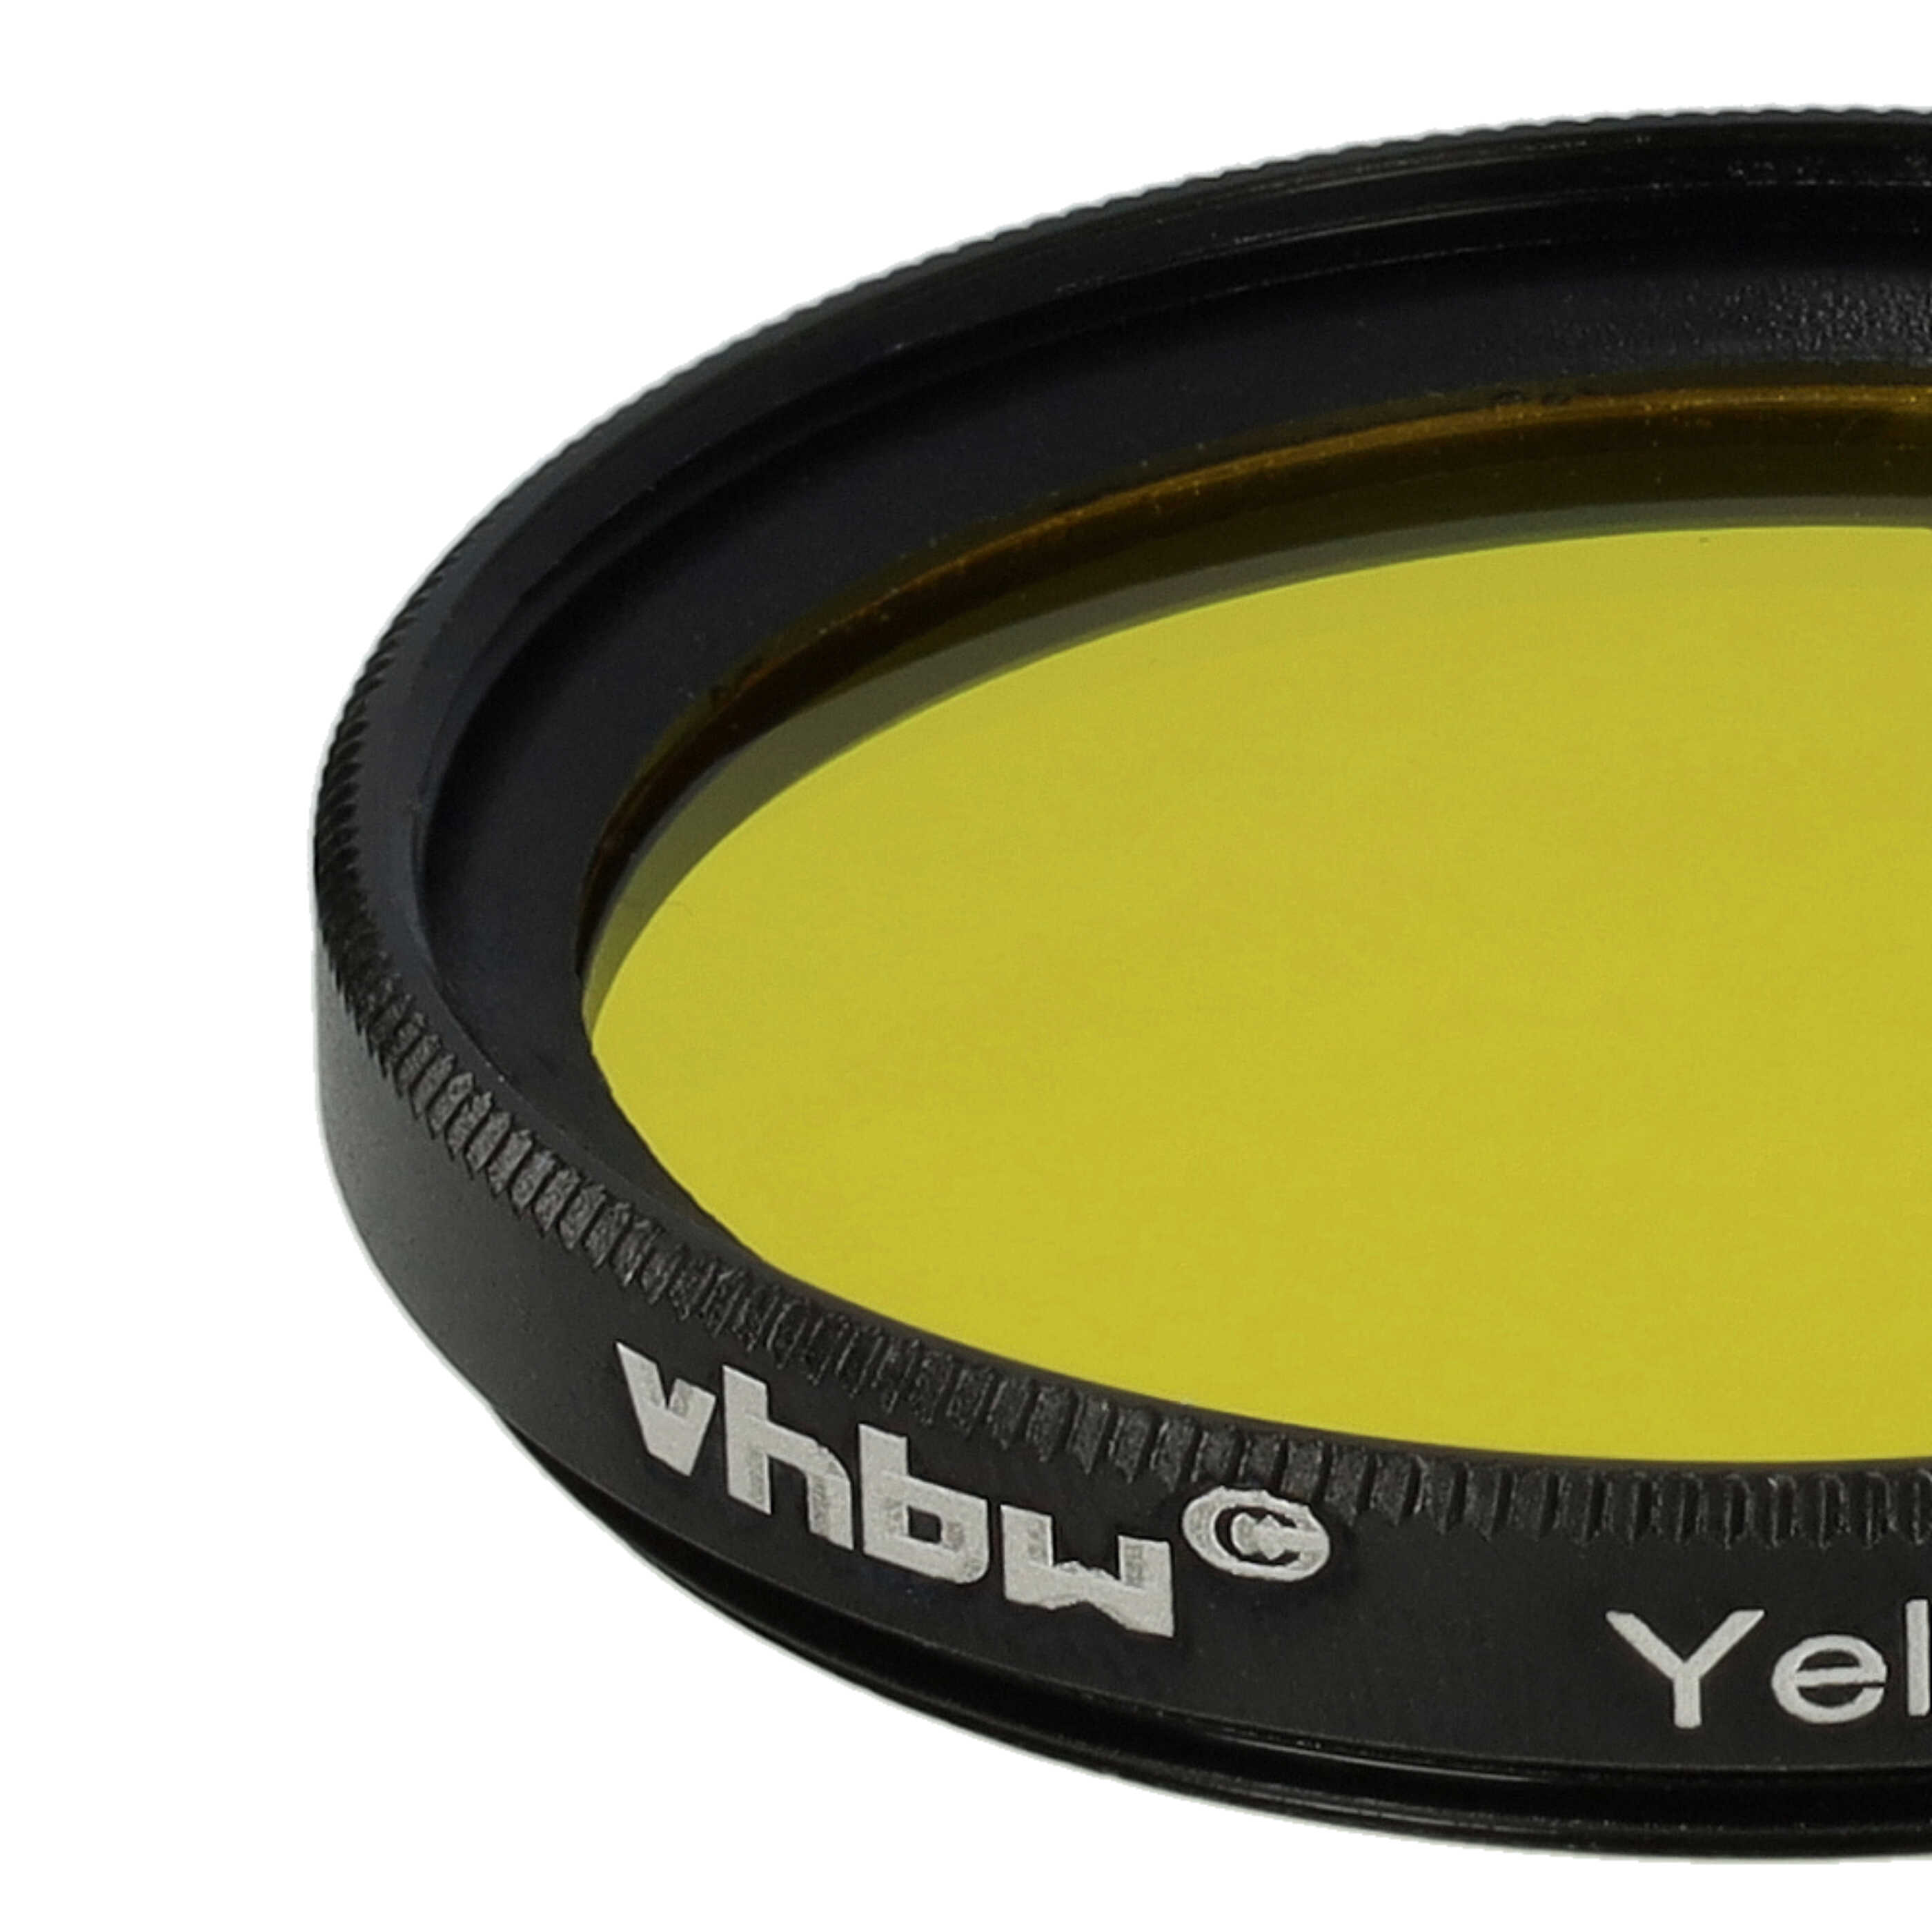 Filtro colorato per obiettivi fotocamera con filettatura da 37 mm - filtro giallo